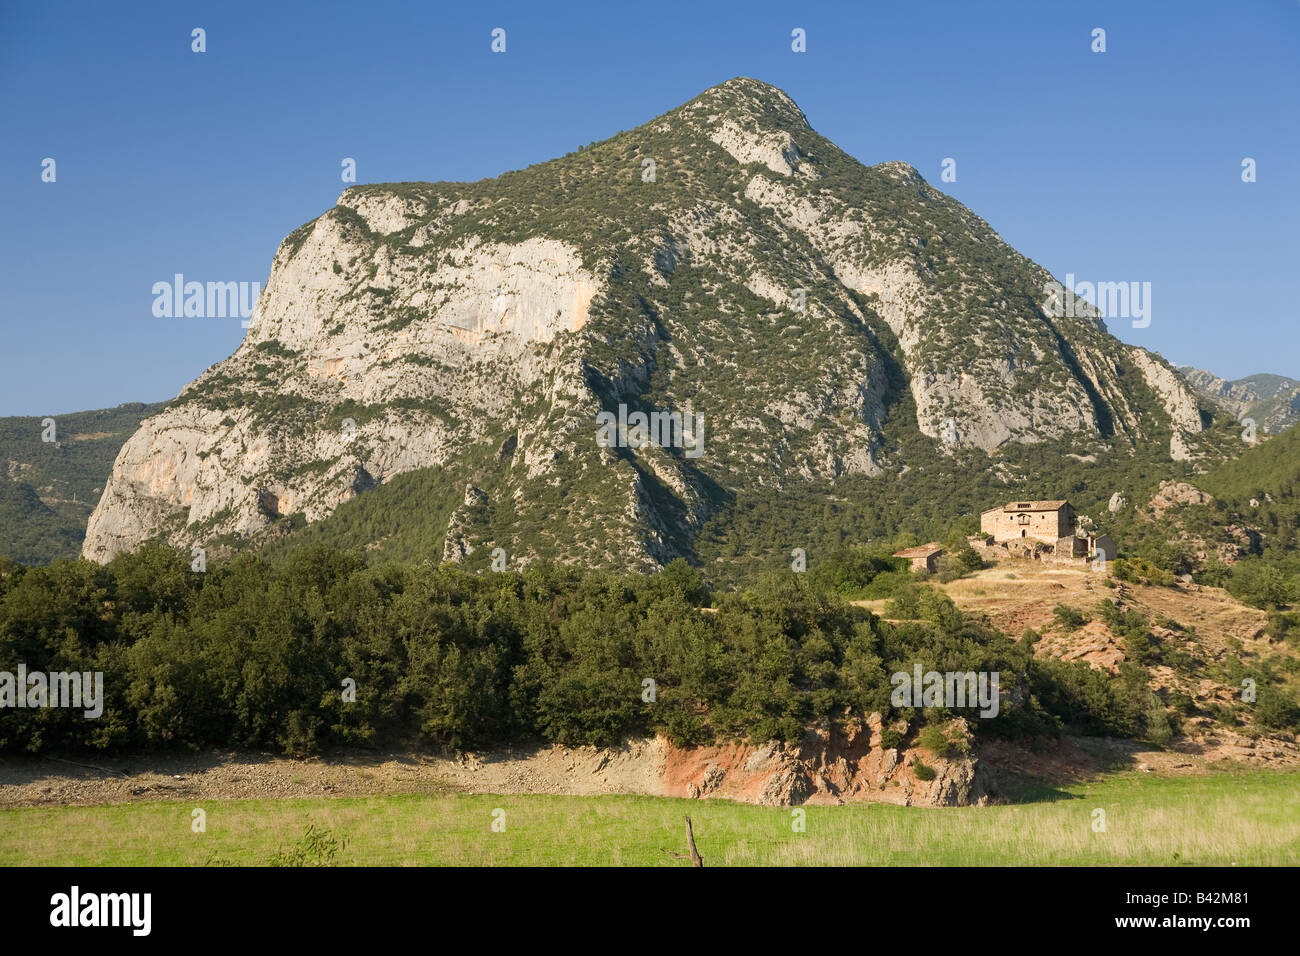 Berg in den Pyrenäen von Spanien in der Nähe von La Seu D'urgell, (Sa Seu d'Urell) in Katalonien, Spanien Stockfoto